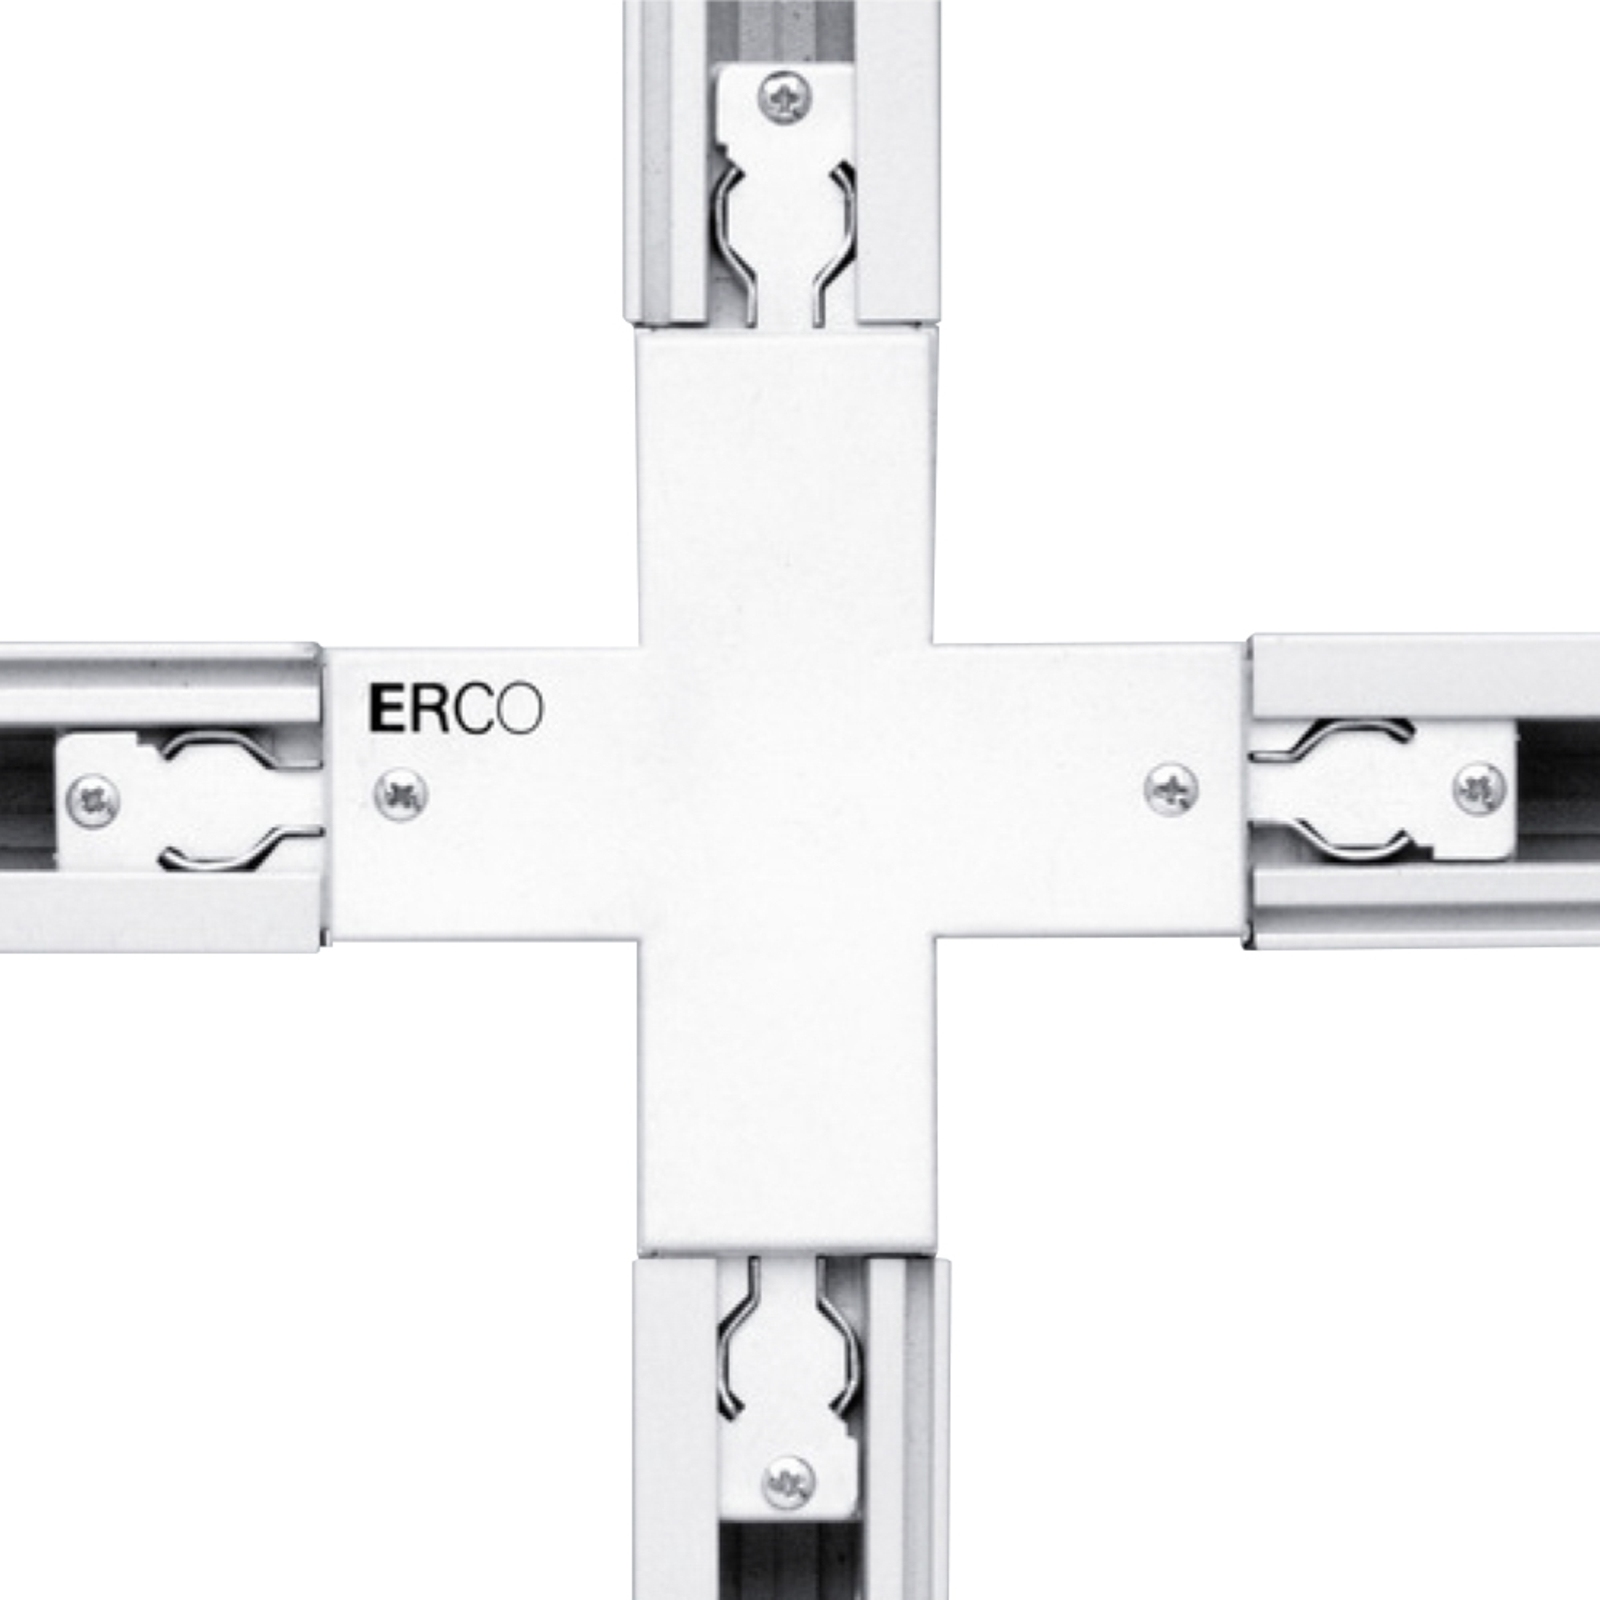 ERCO krysskontakt for 3-fase skinner, hvit